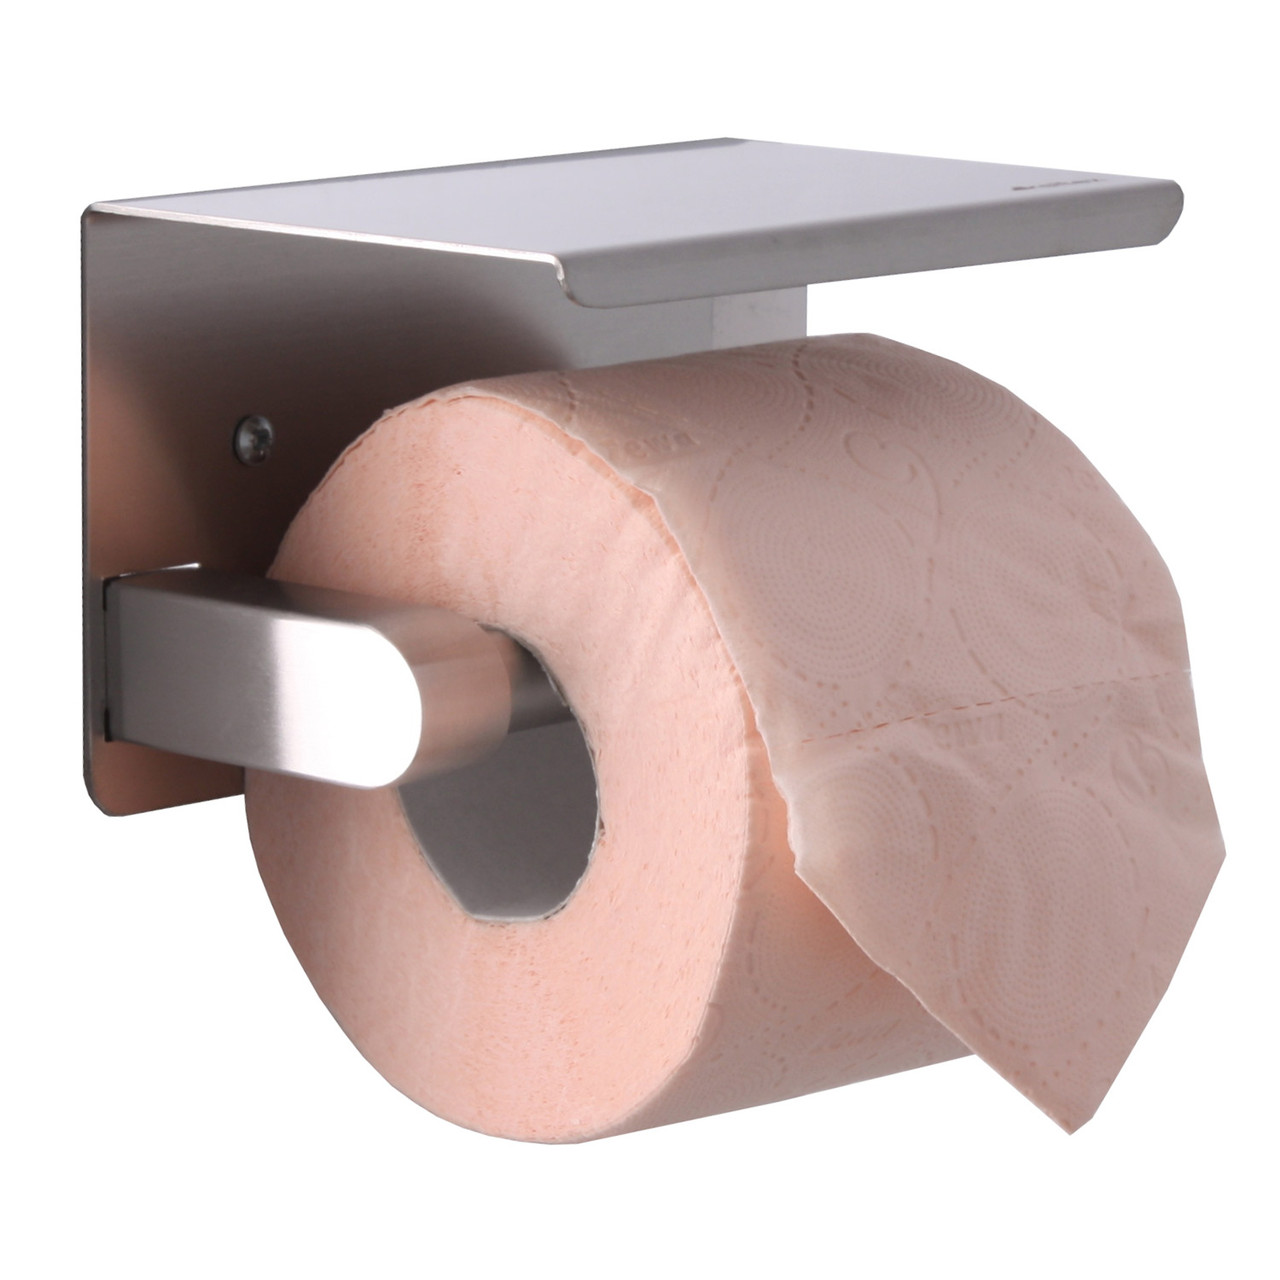 Диспенсер для туалетной бумаги Ksitex TH-112M (матовый), фото 1